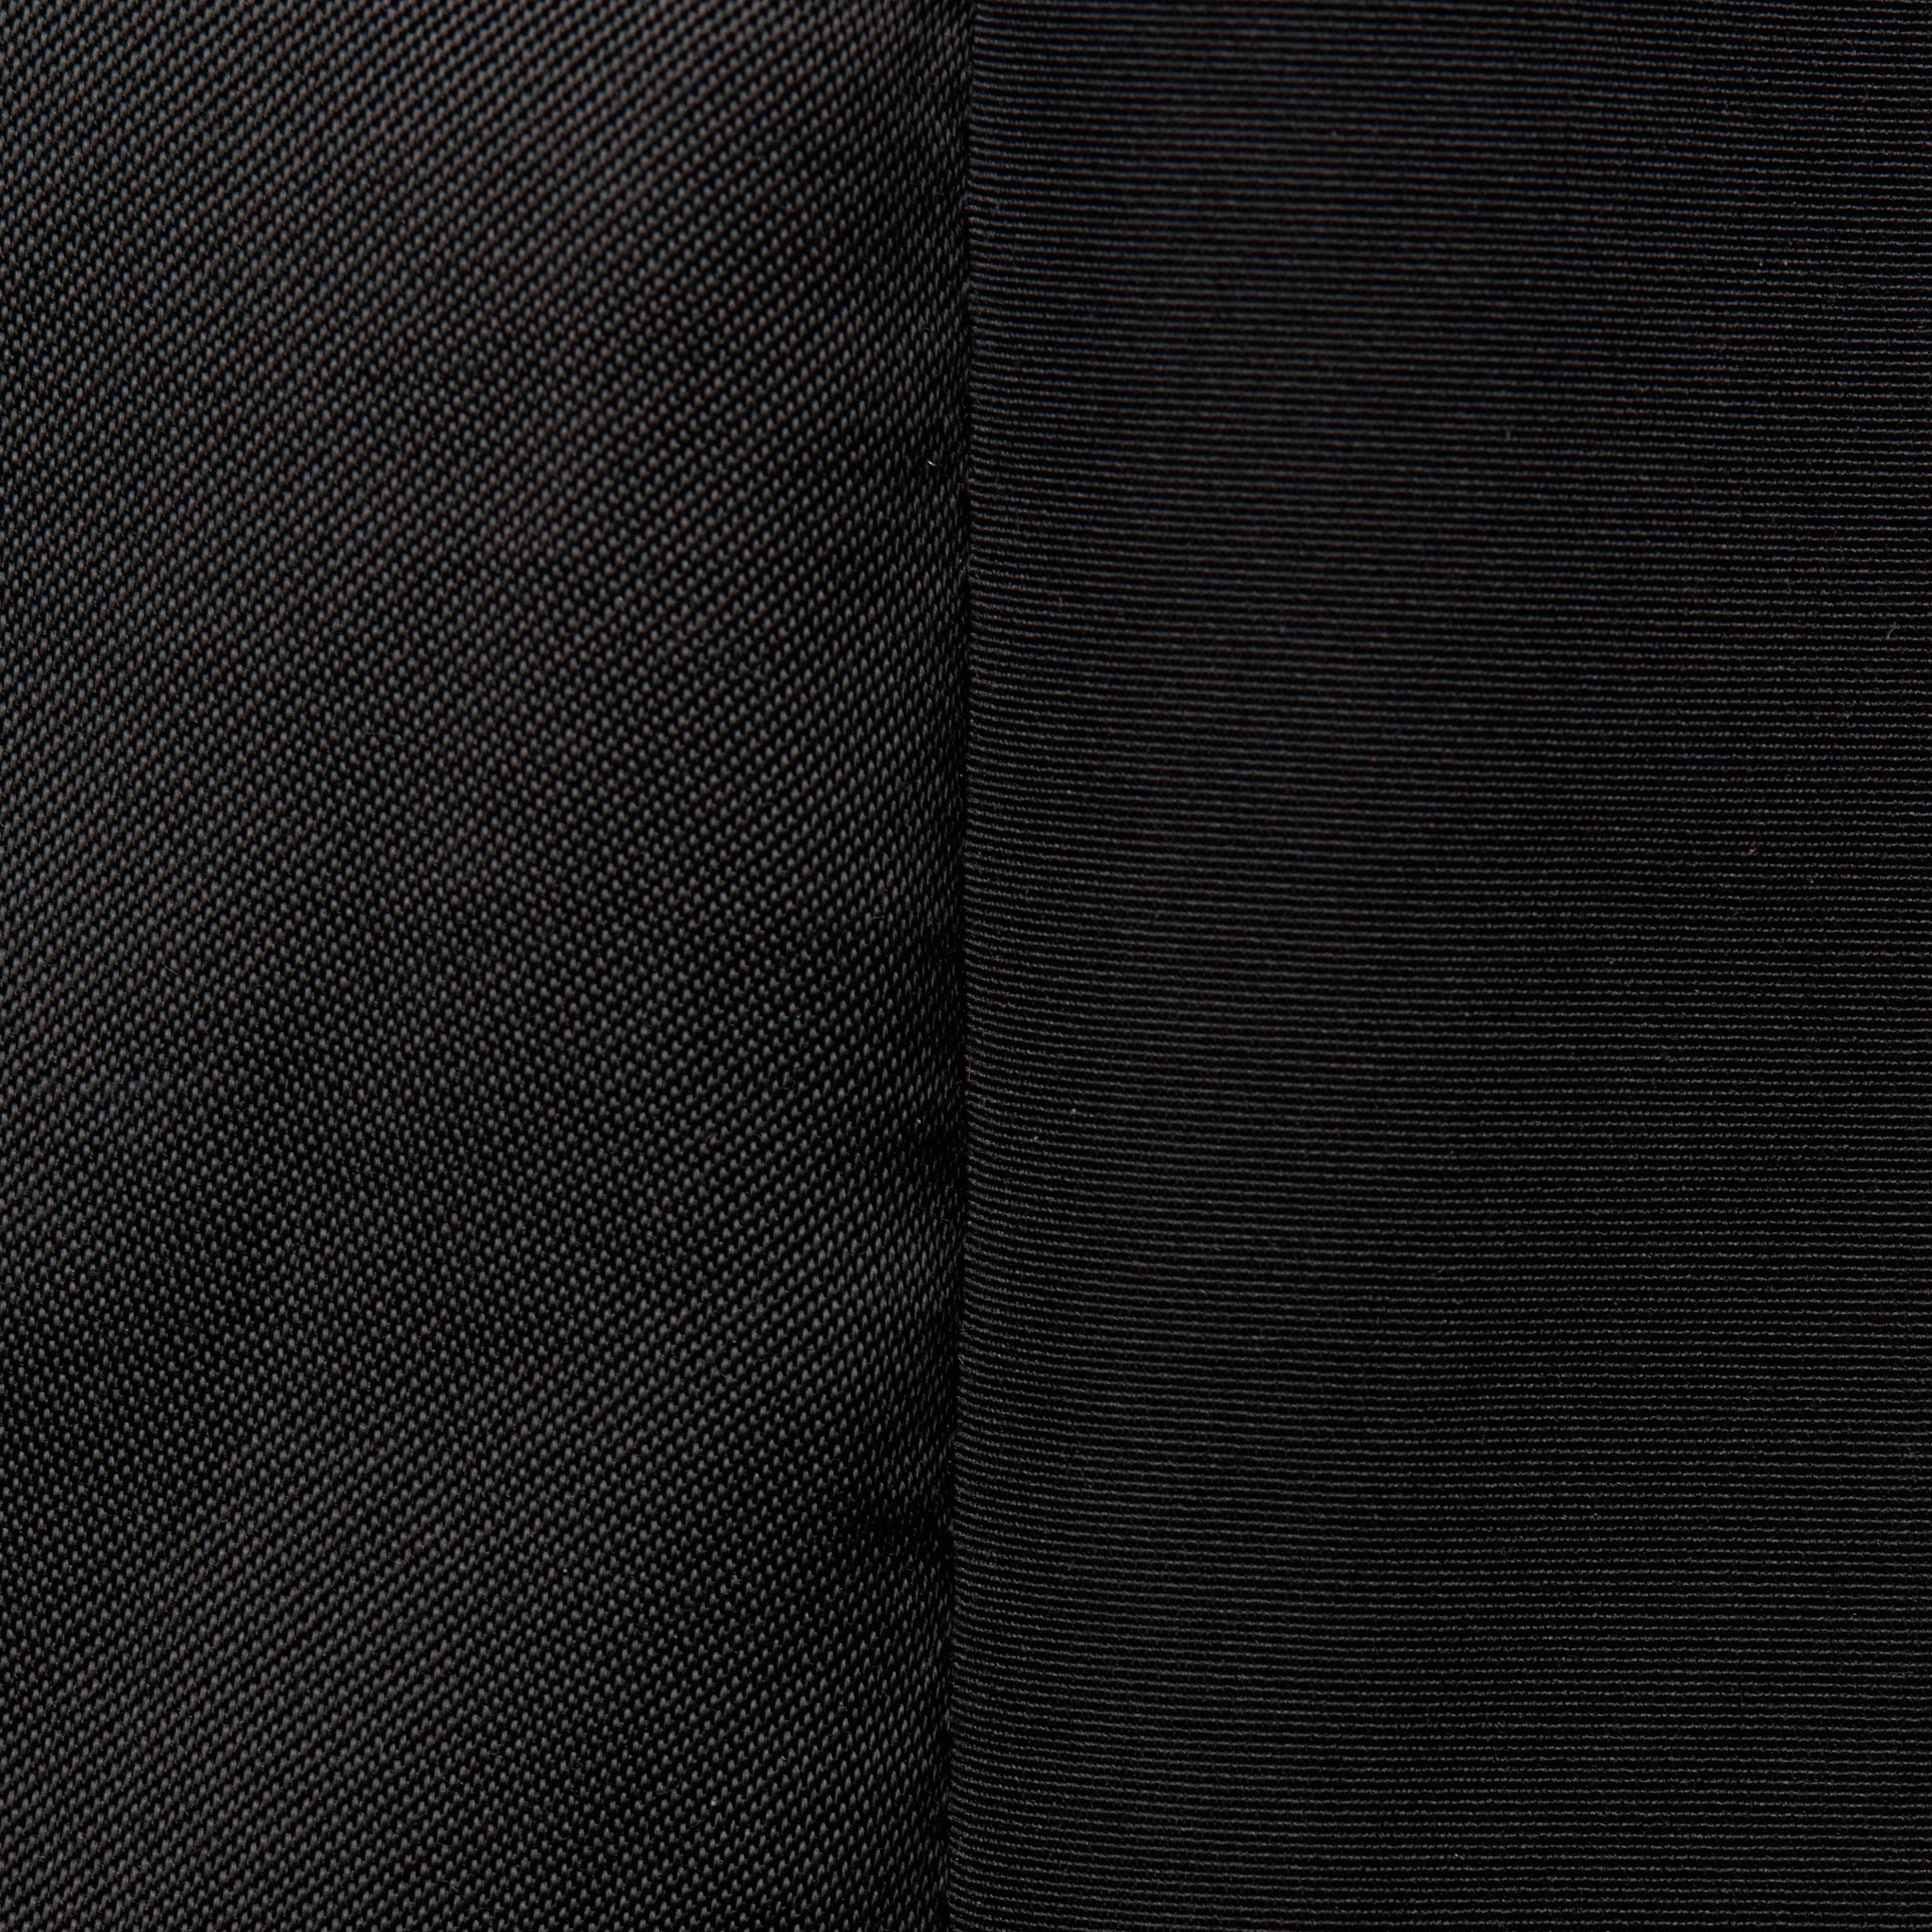 MAISON MIHARA YASUHIRO Black Satin Reversible Jacket Coat Size 46 US XS